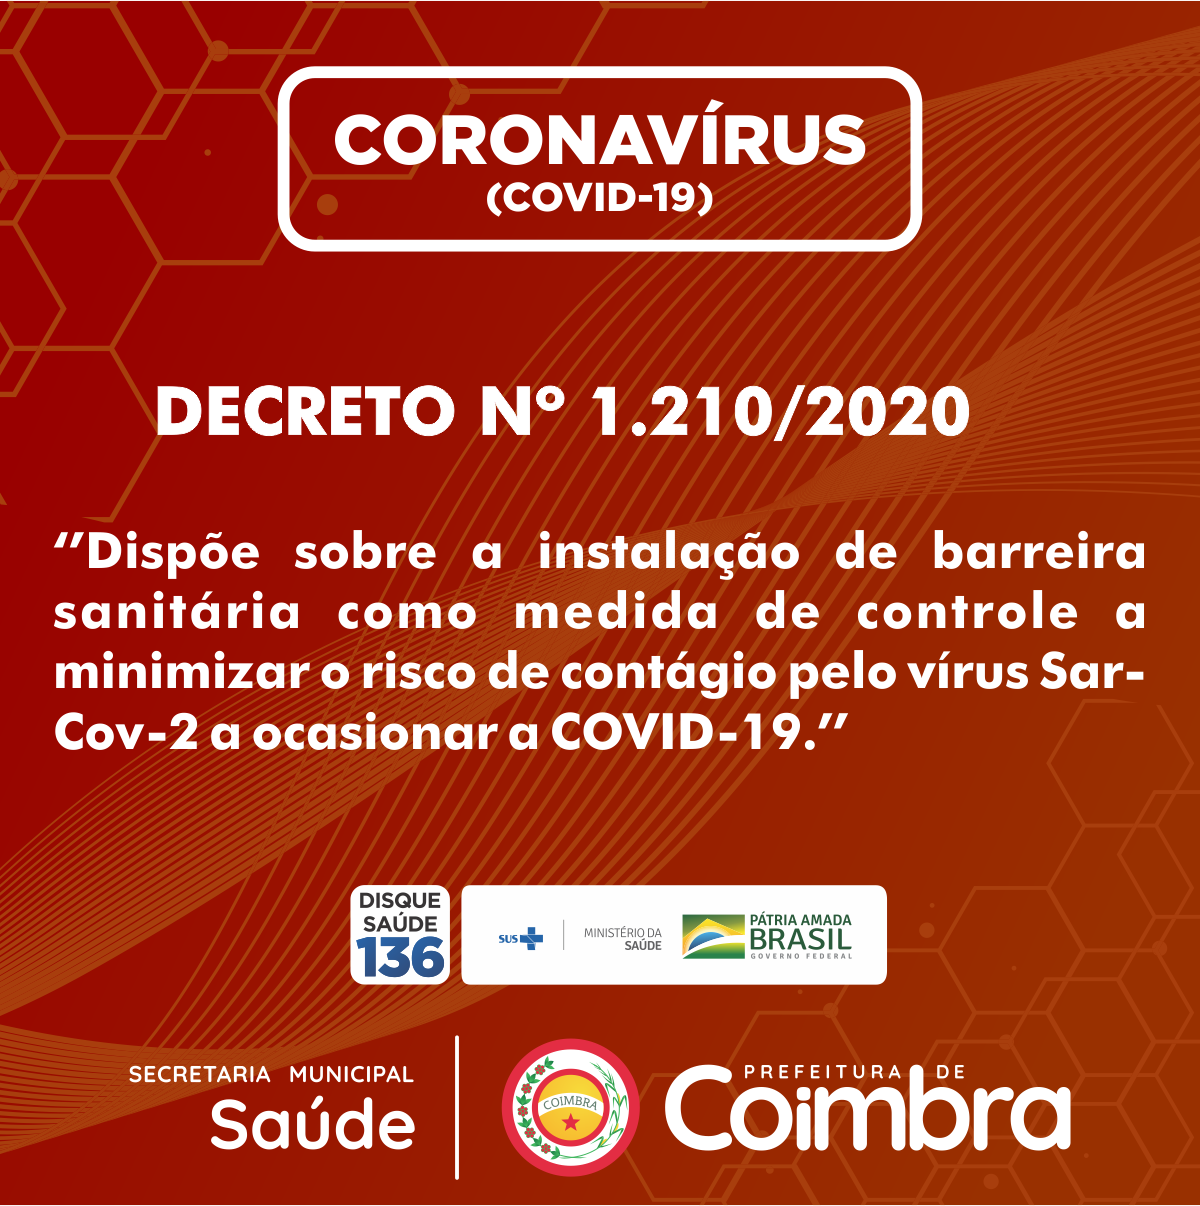 Decreto 1.210/2020 - Dispõe sobre a instalação de barreira sanitária como medida de controle a minimizar o risco de contágio pelo vírus Sar-Cov-2 a ocasionar a COVID-19.